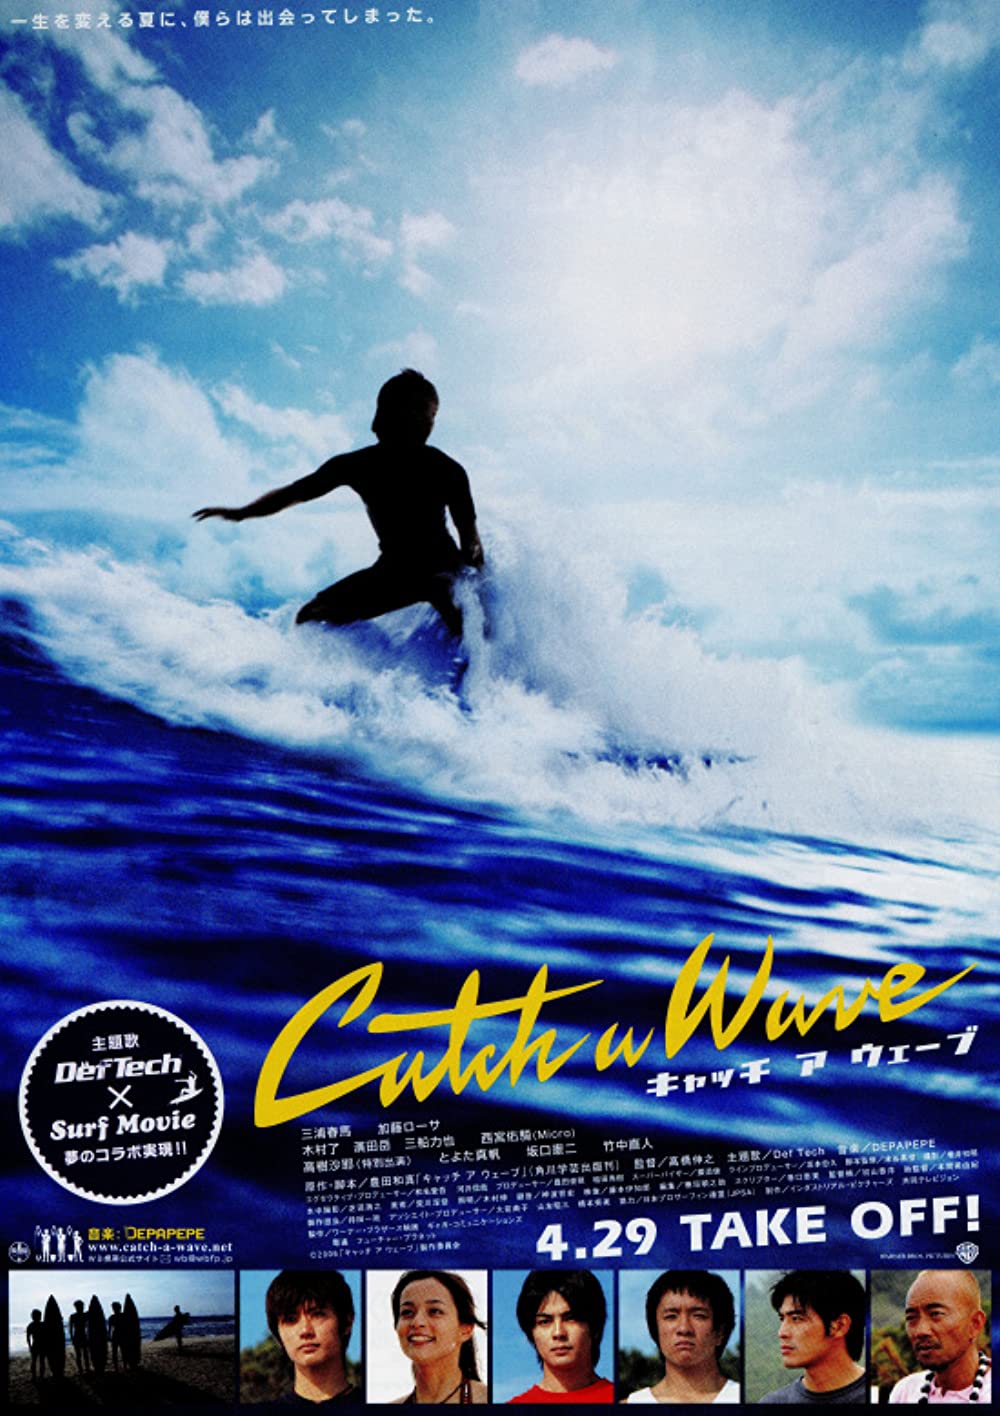 ดูหนังออนไลน์ฟรี CATCH A WAVE (2006) โต้แรงคลื่น ต้านแรงรัก